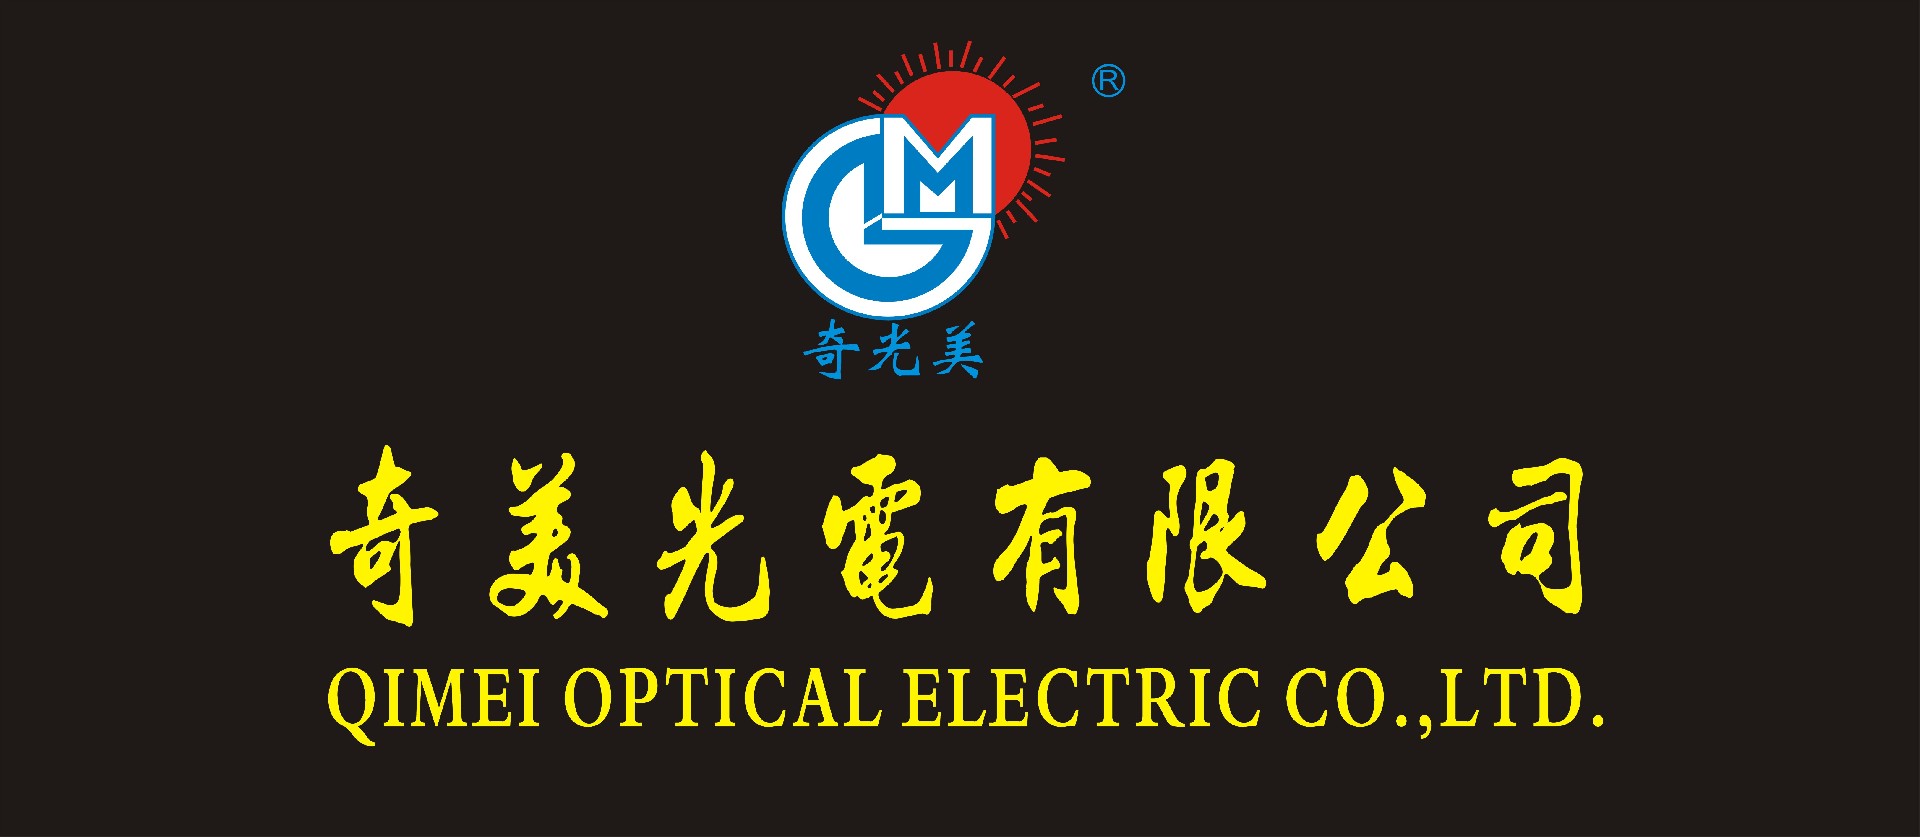 DONGGUAN QIMEI OPTICAL & ELECTRIC CO.,LTD